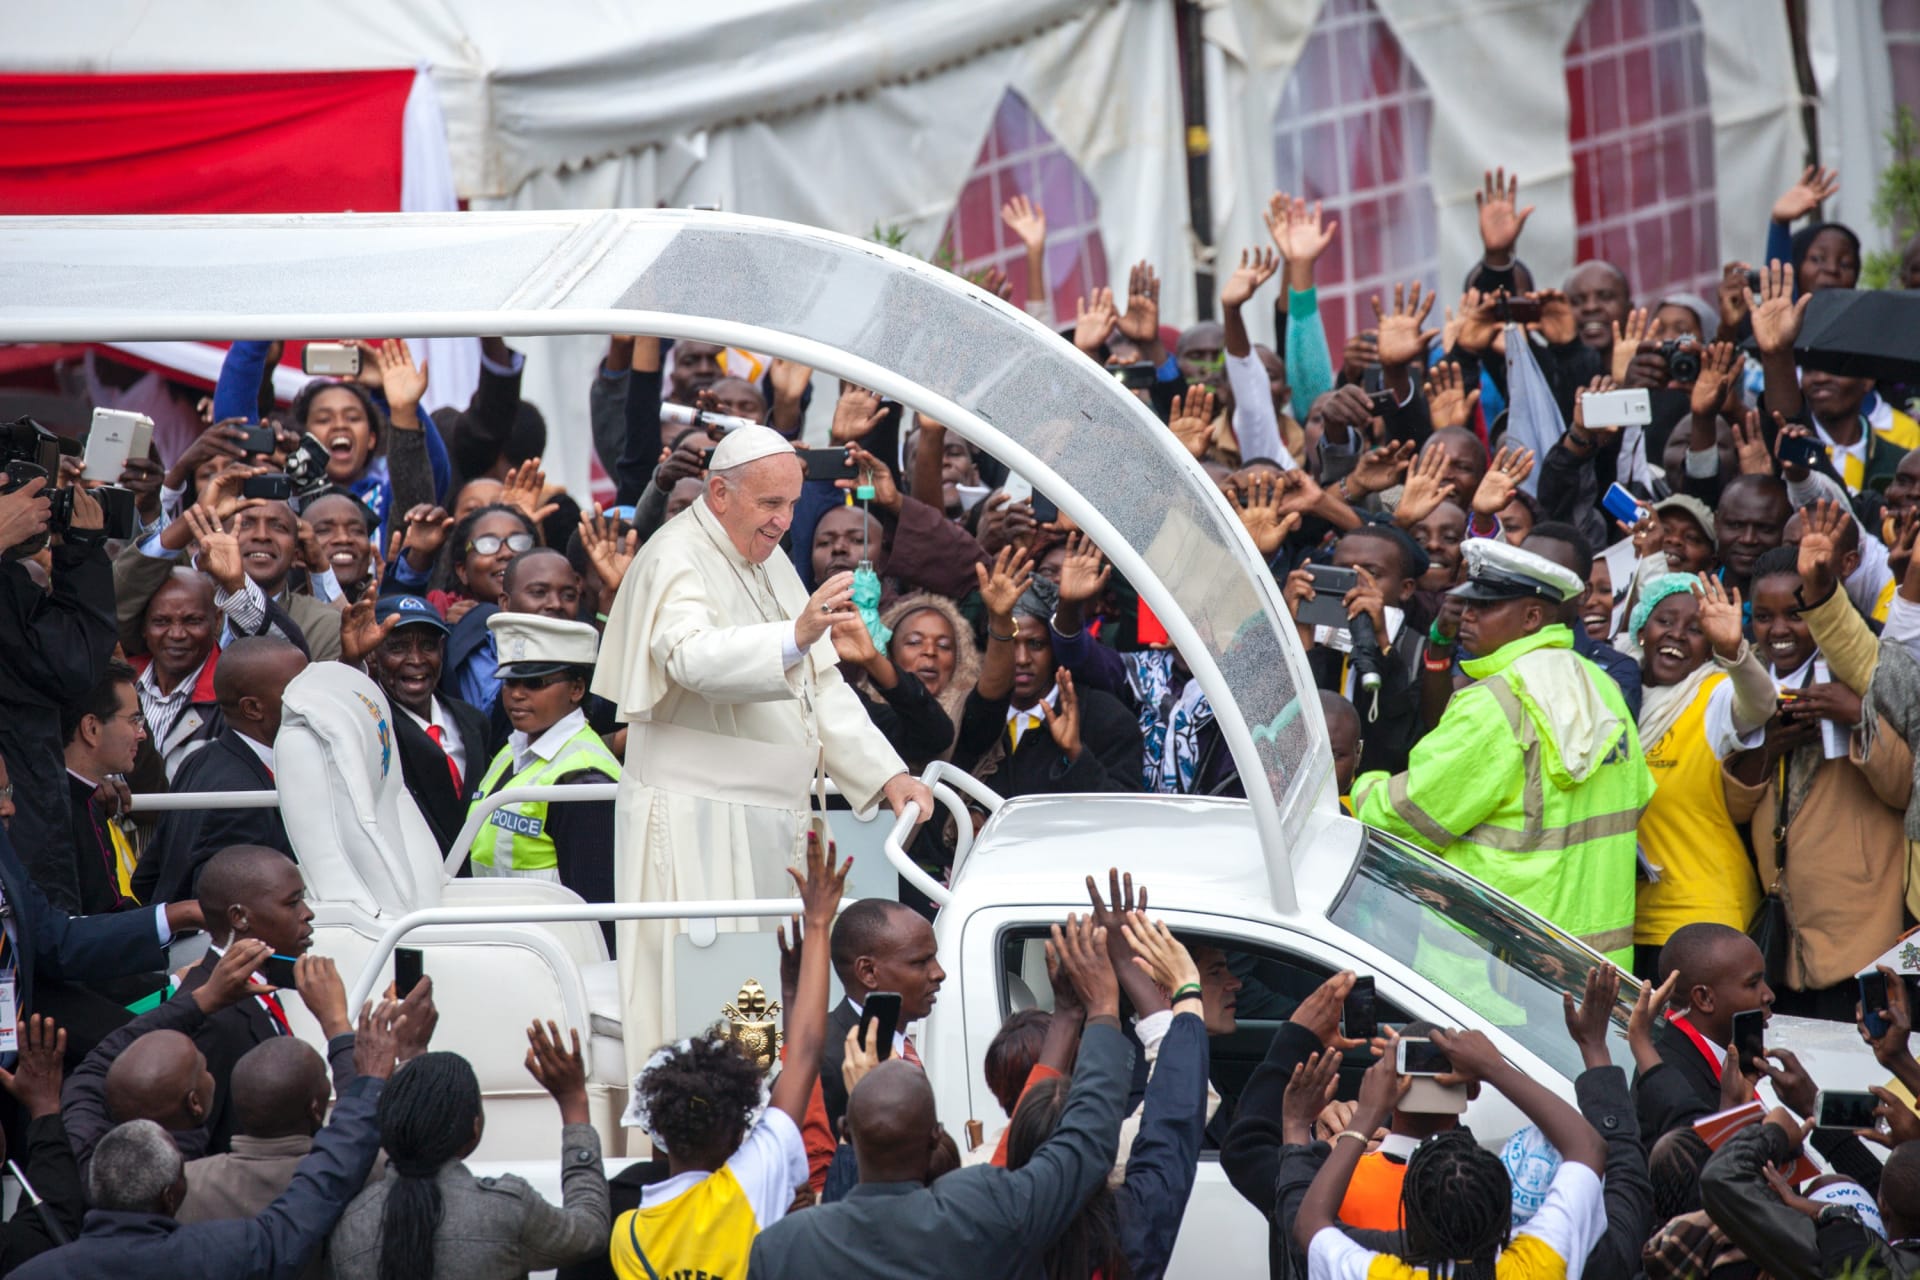 بابا الفاتيكان في أول زيارة لأفريقيا: لا يمكن السكوت على نهب موارد القارة .. وتغليب "المصالح على الصالح العام" كارثة